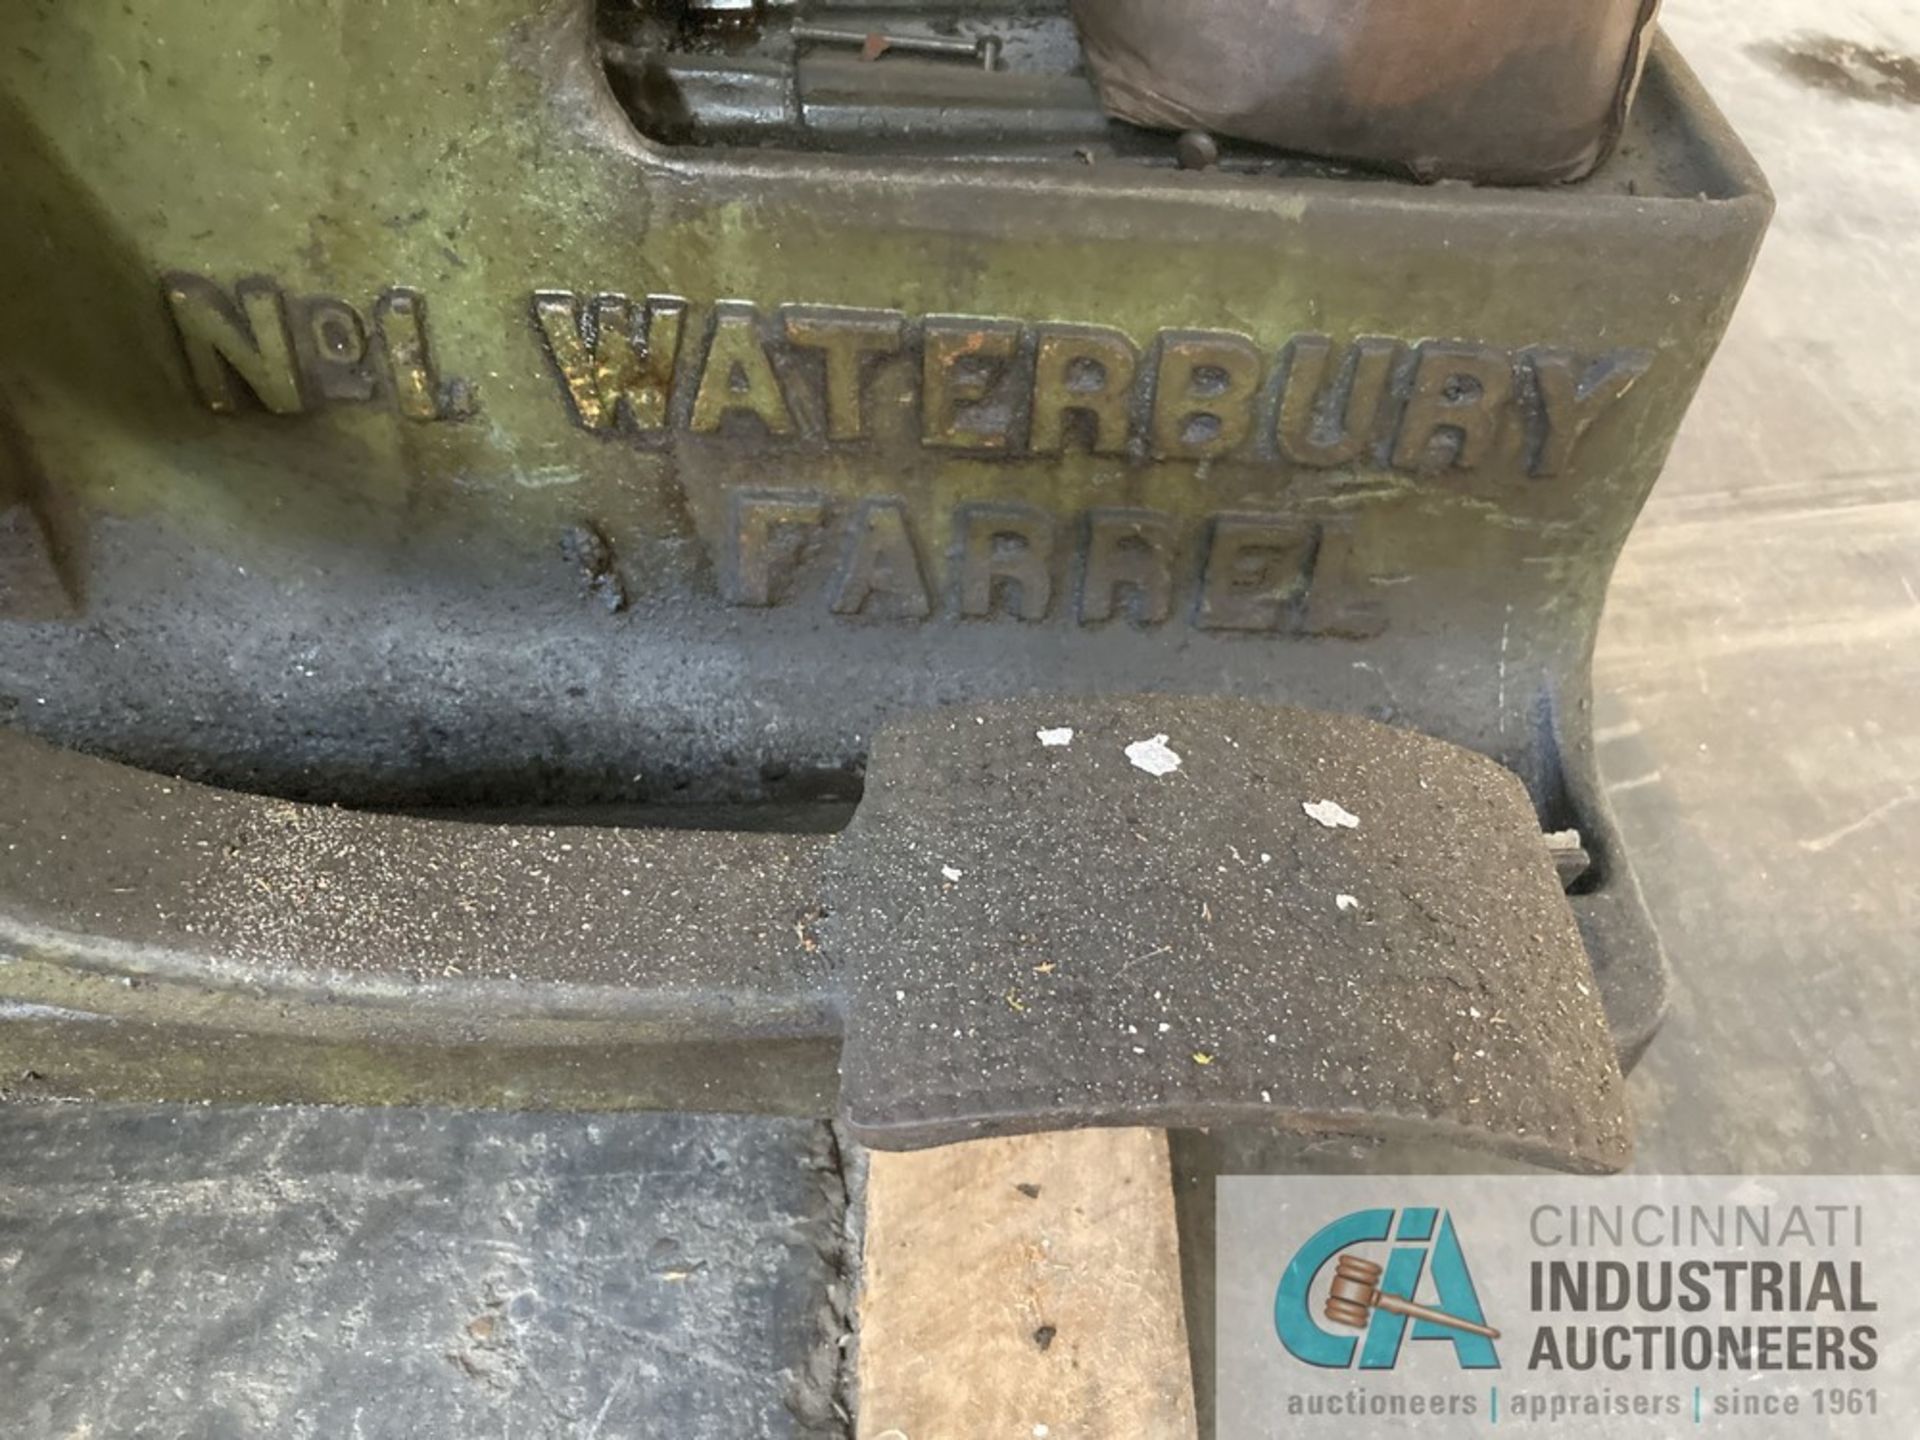 NO. 1 WATERBURY FARREL THREAD ROLLER - Image 5 of 5